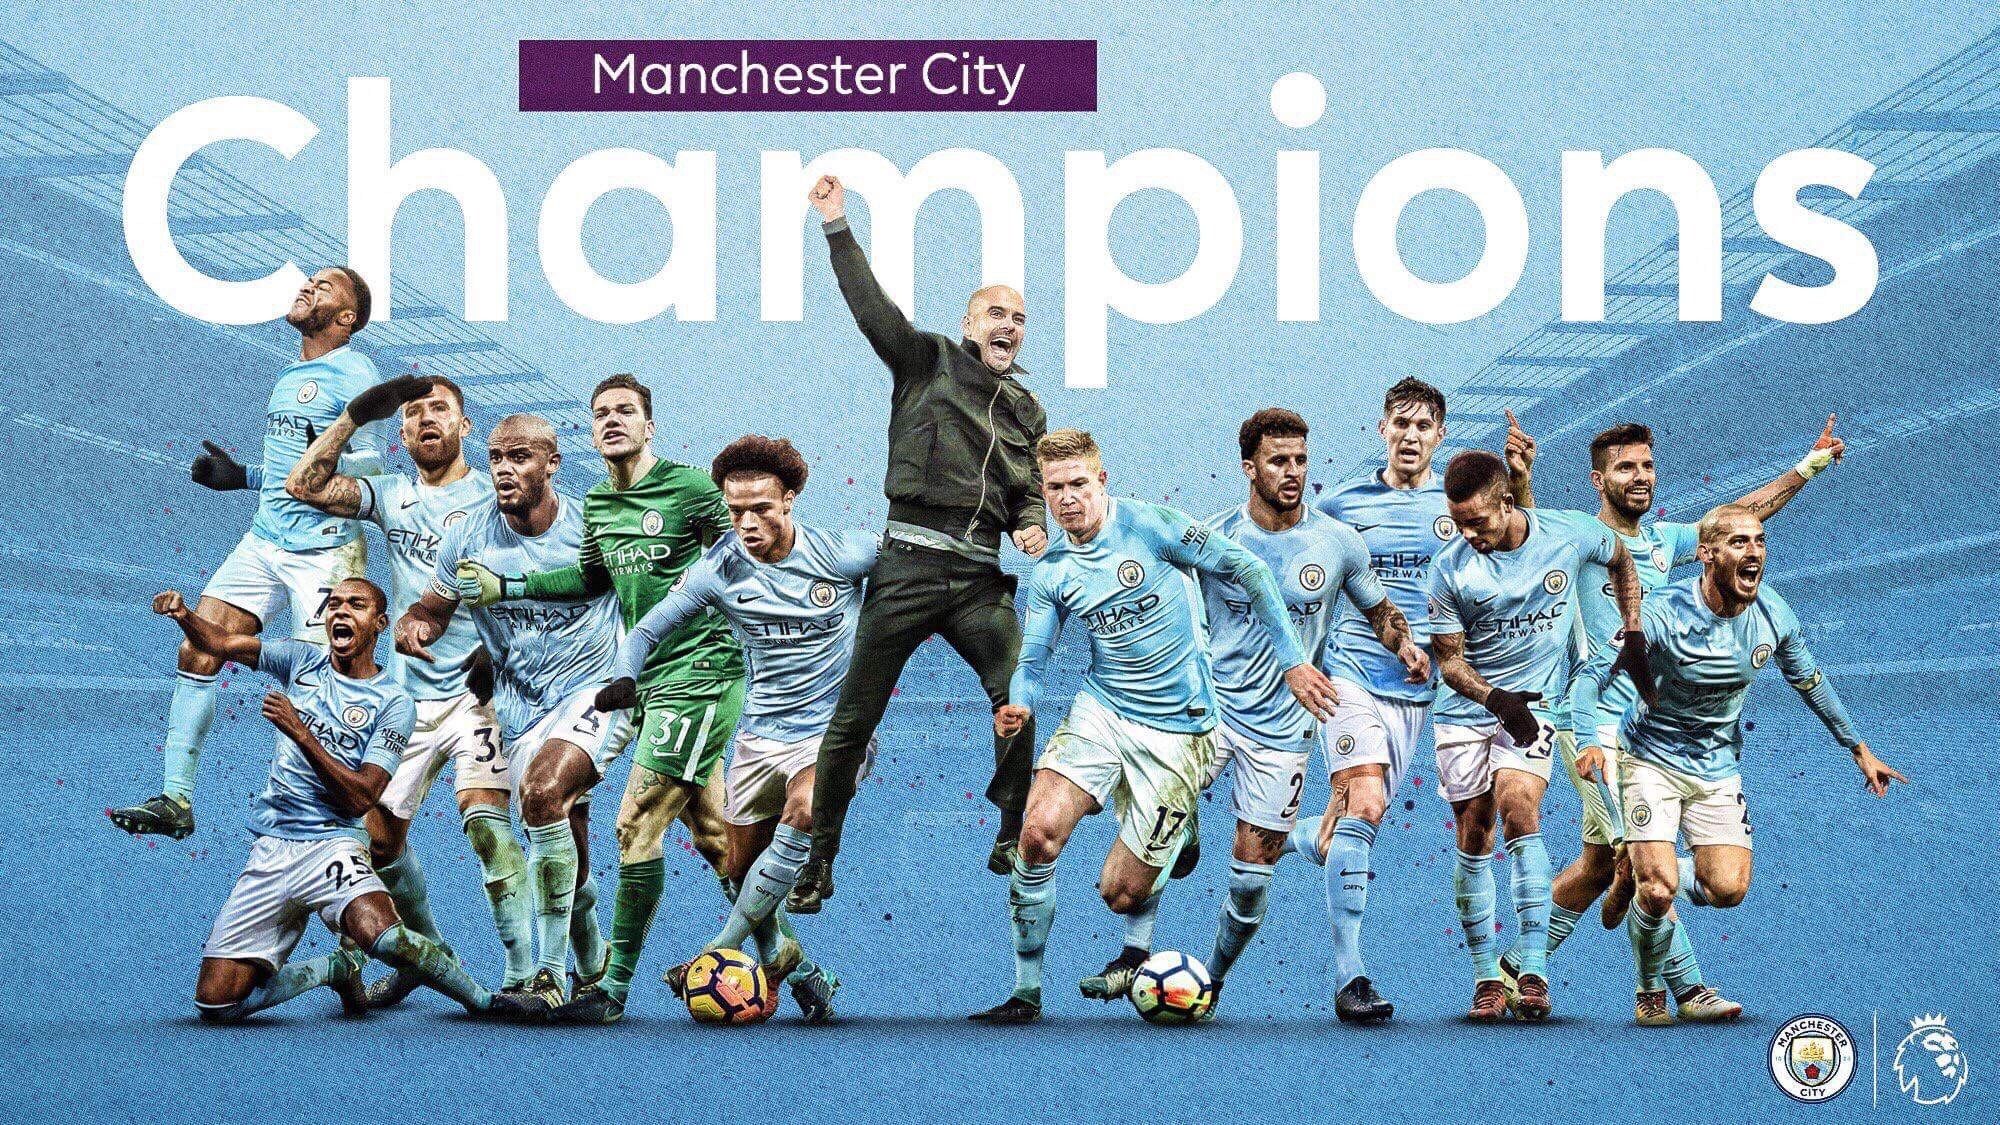 Man City Champions Wallpaper sẵn sàng đón chào người hâm mộ những giờ phút đầy niềm vui và hạnh phúc. Hãy cùng chúng tôi chào đón thành tích lớn này của đội bóng yêu thích của bạn với bộ sưu tập hình ảnh đẹp mắt này!